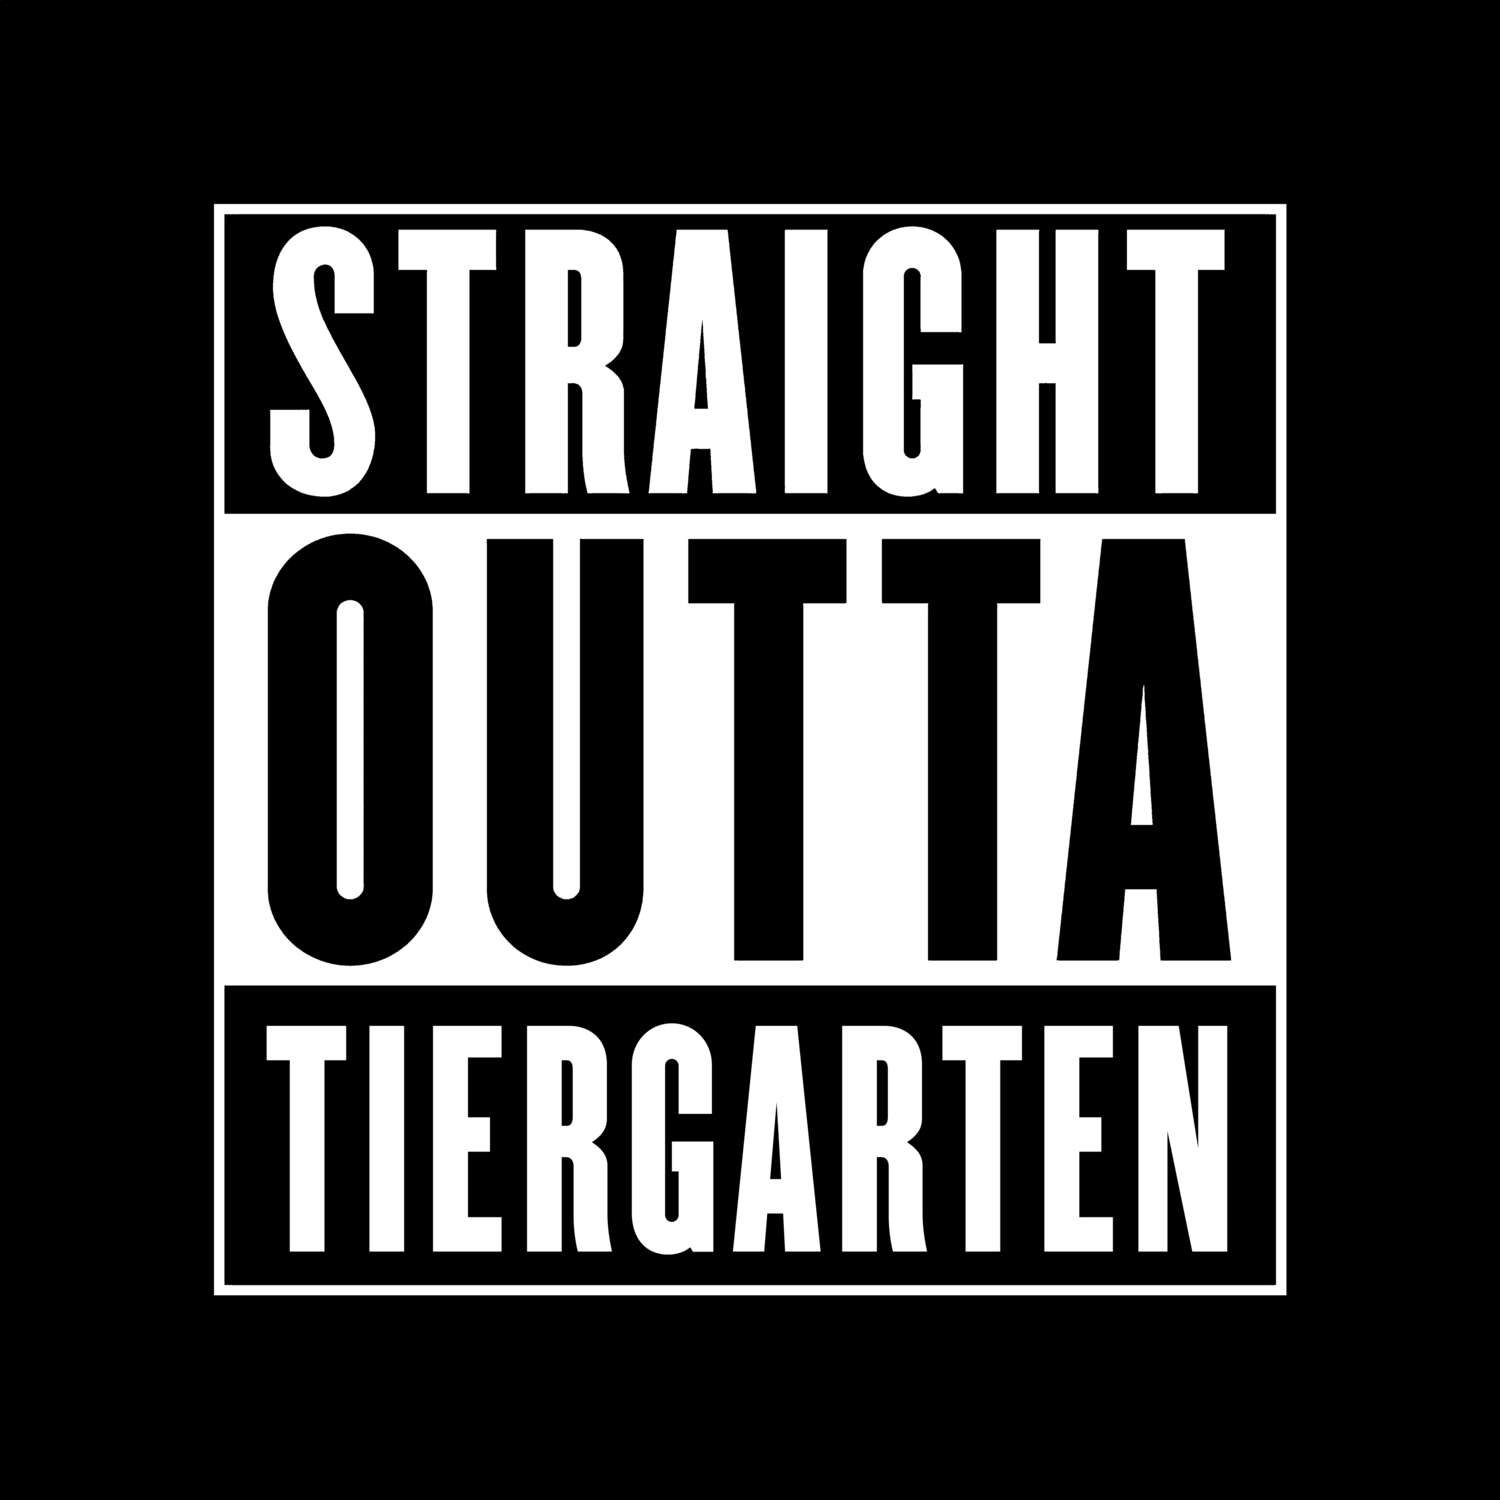 Tiergarten T-Shirt »Straight Outta«